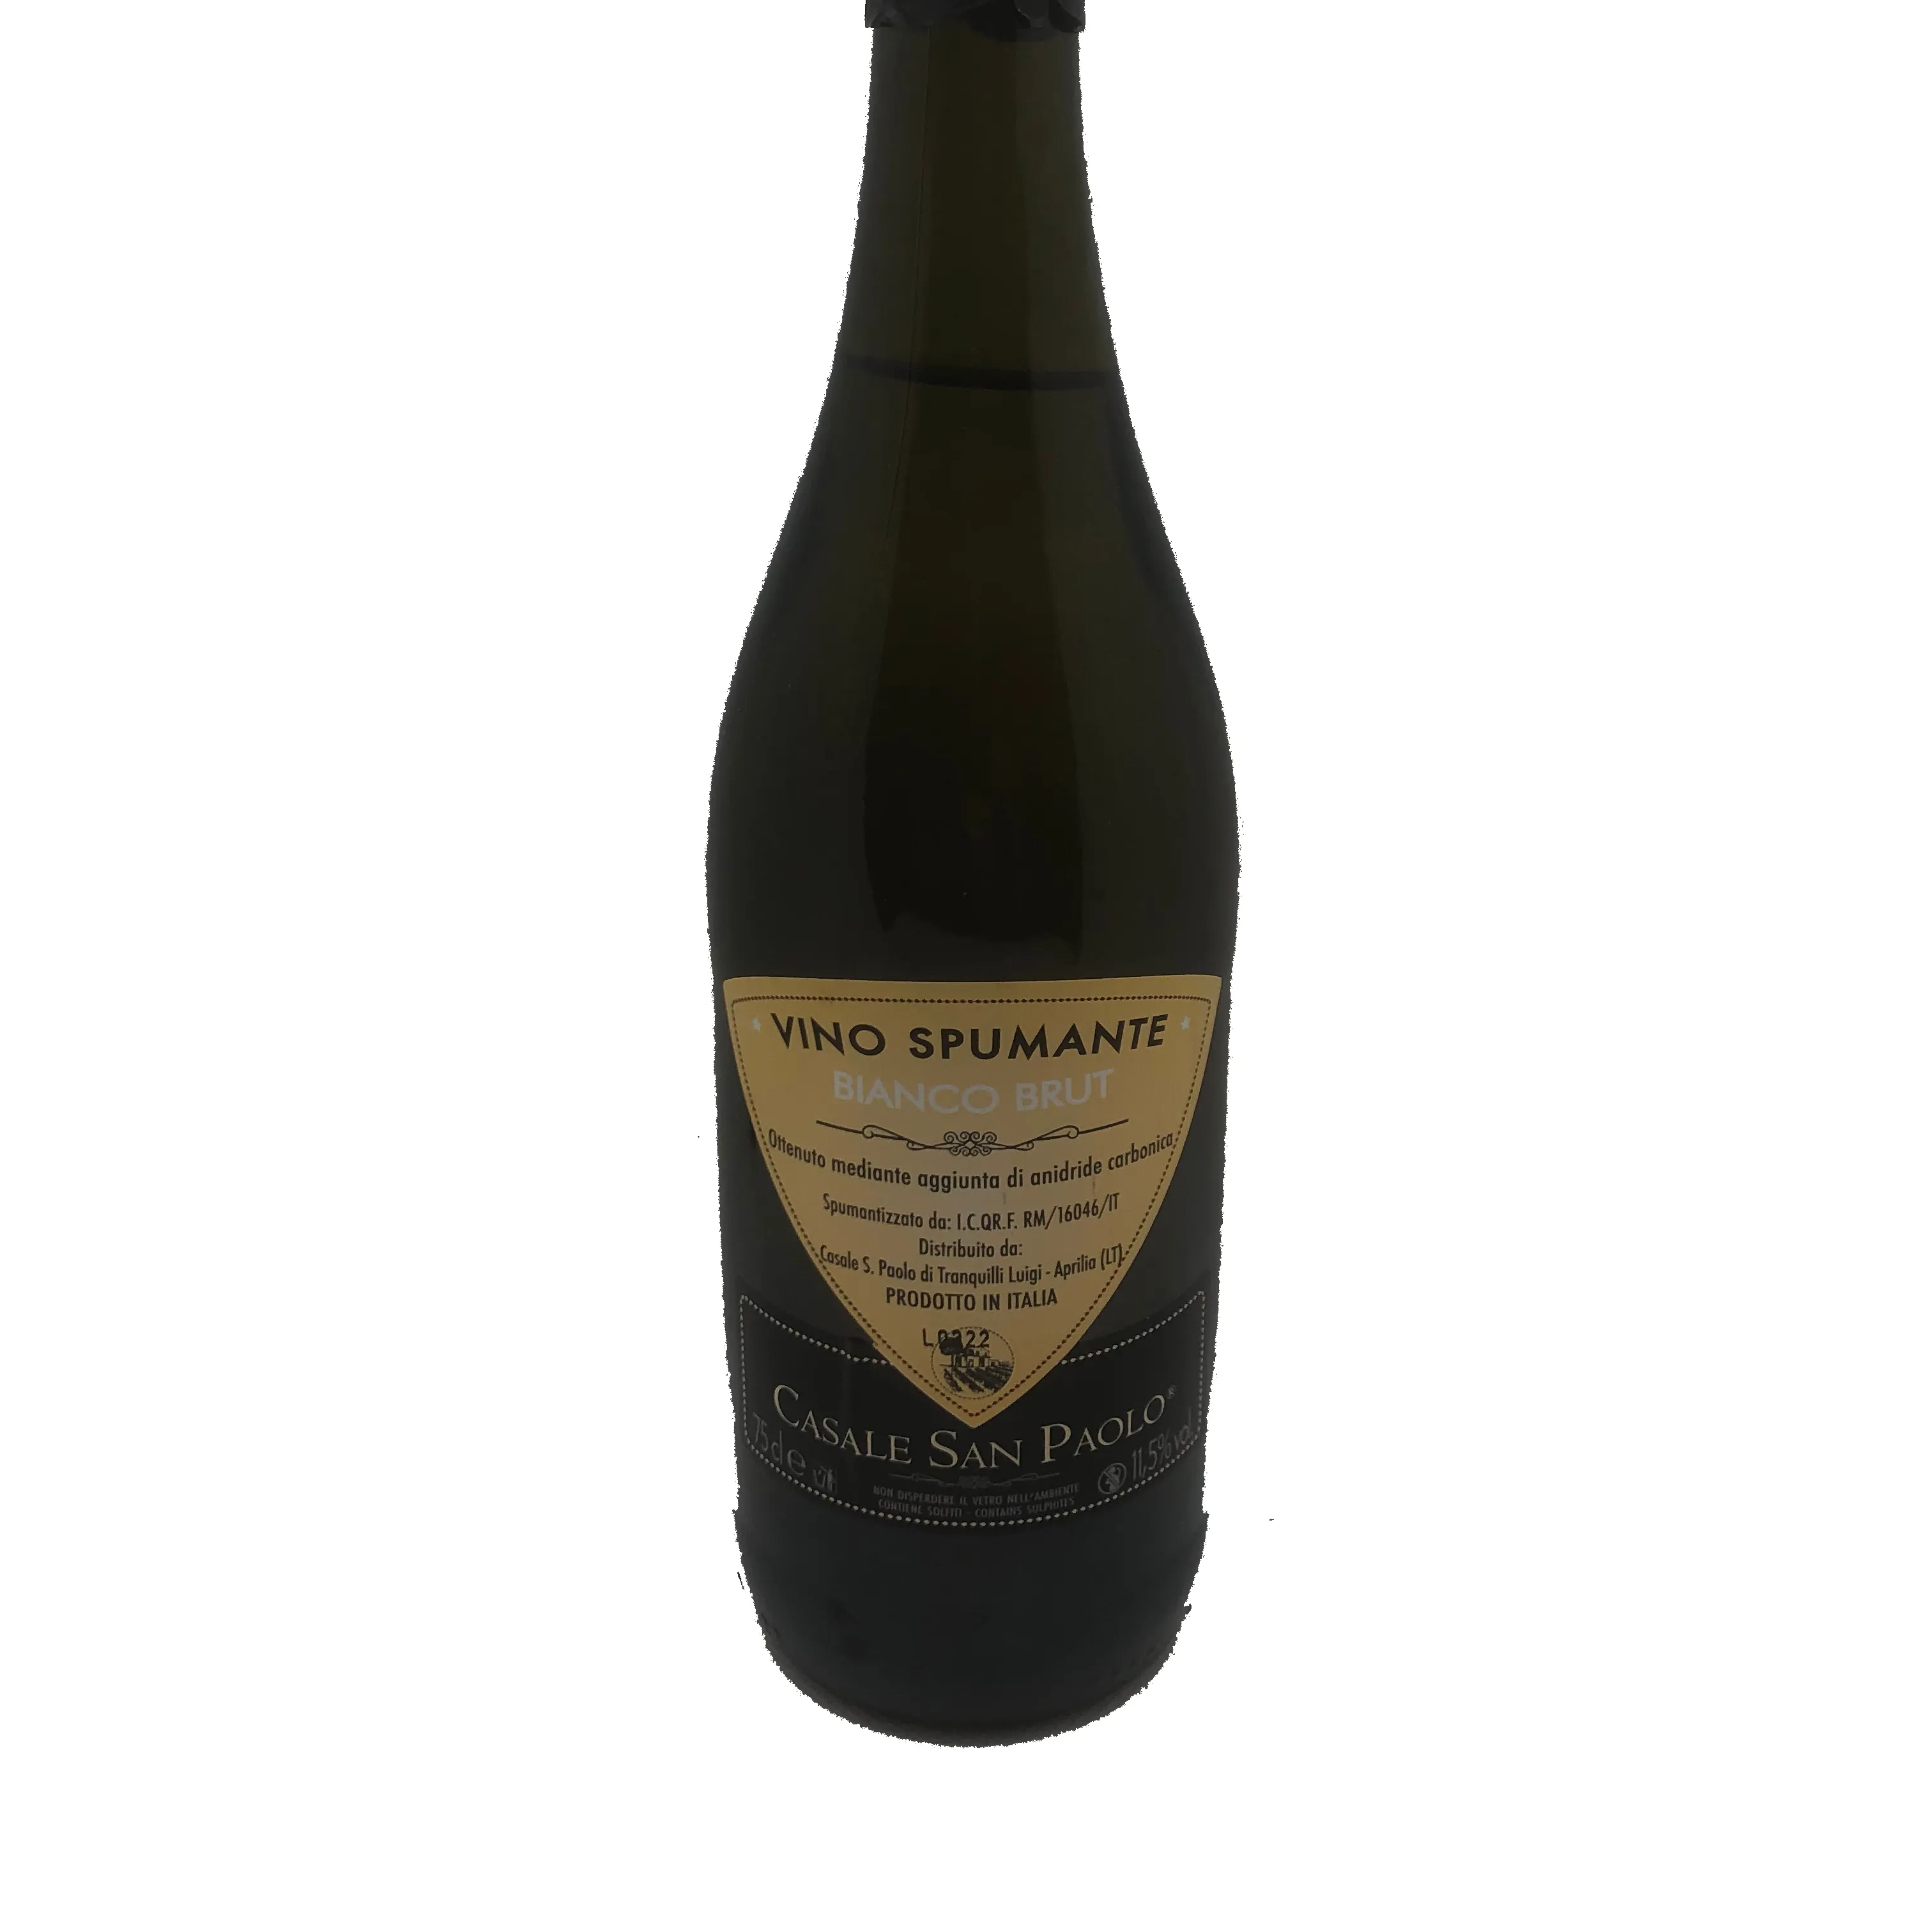 יבש אדום בציר OEM בקבוק אריזת יין מיכל משקל מדף סיטונאי ספרד עבור שולחן יין מתוק לבן יין שרדונה 2021